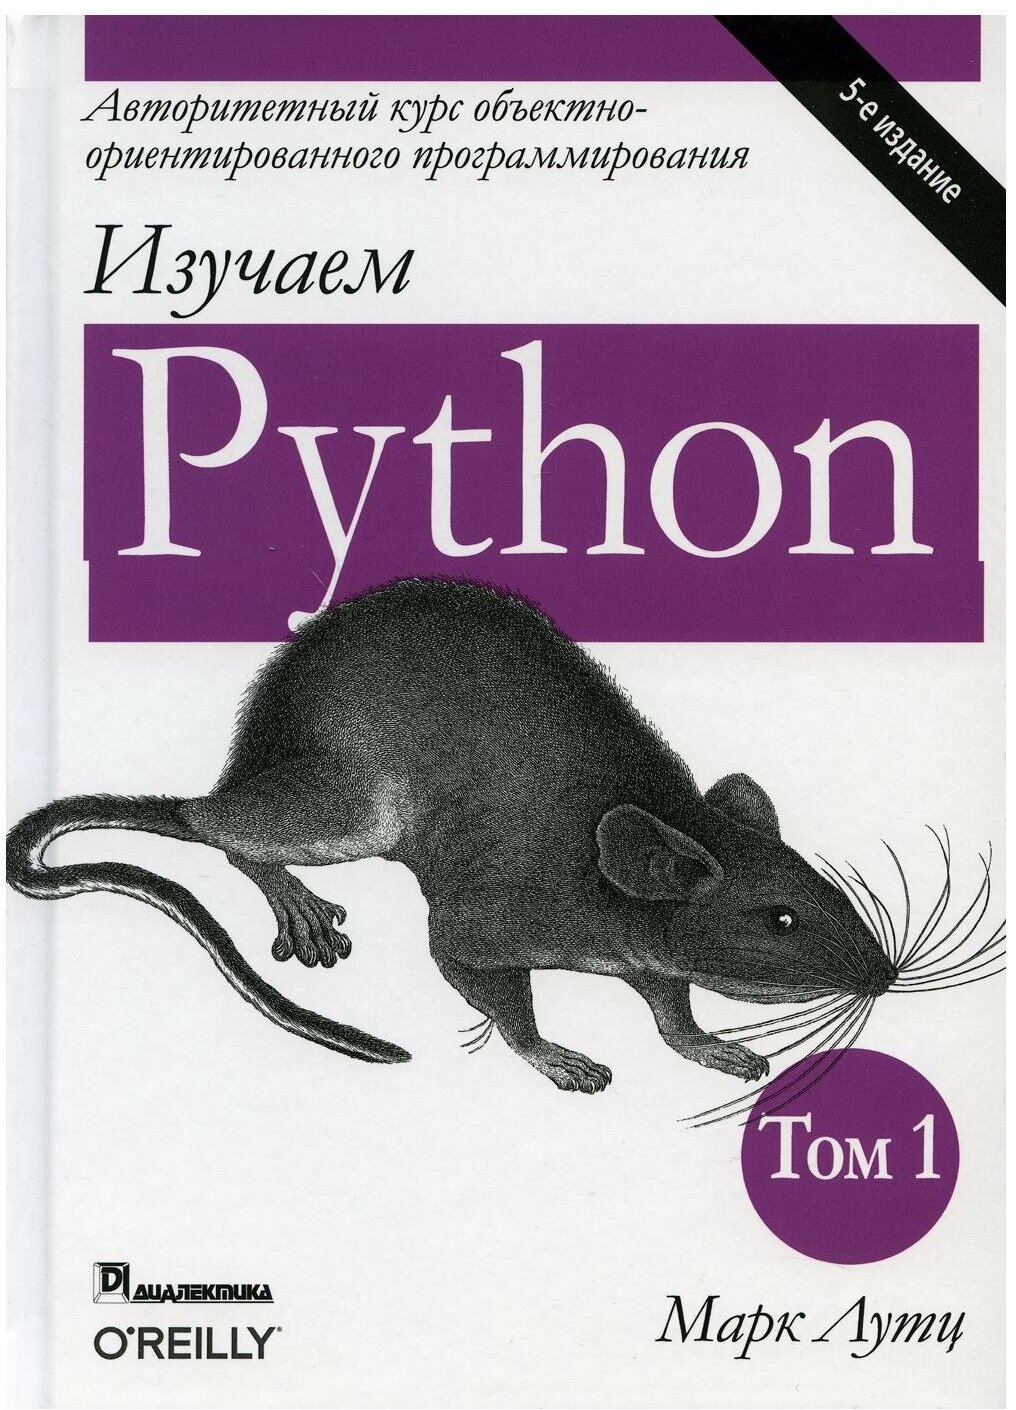 Лутц М. "Изучаем Python. 5-е изд. Т. 1"